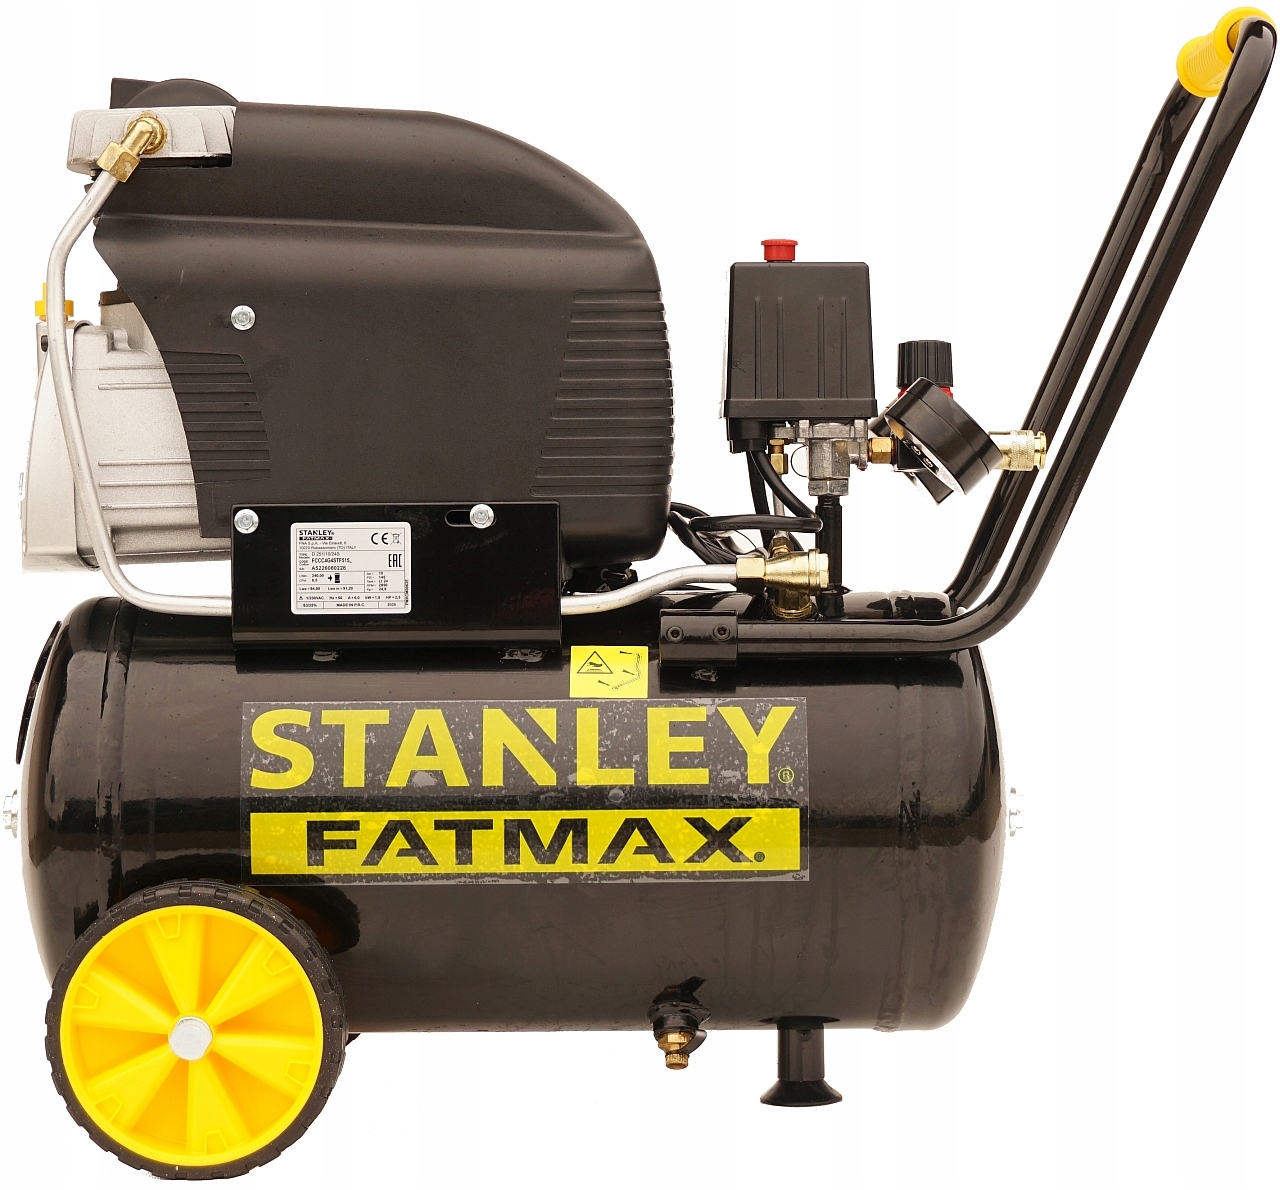 Compresor Stanley 24l Fccc404stc105 + Kit